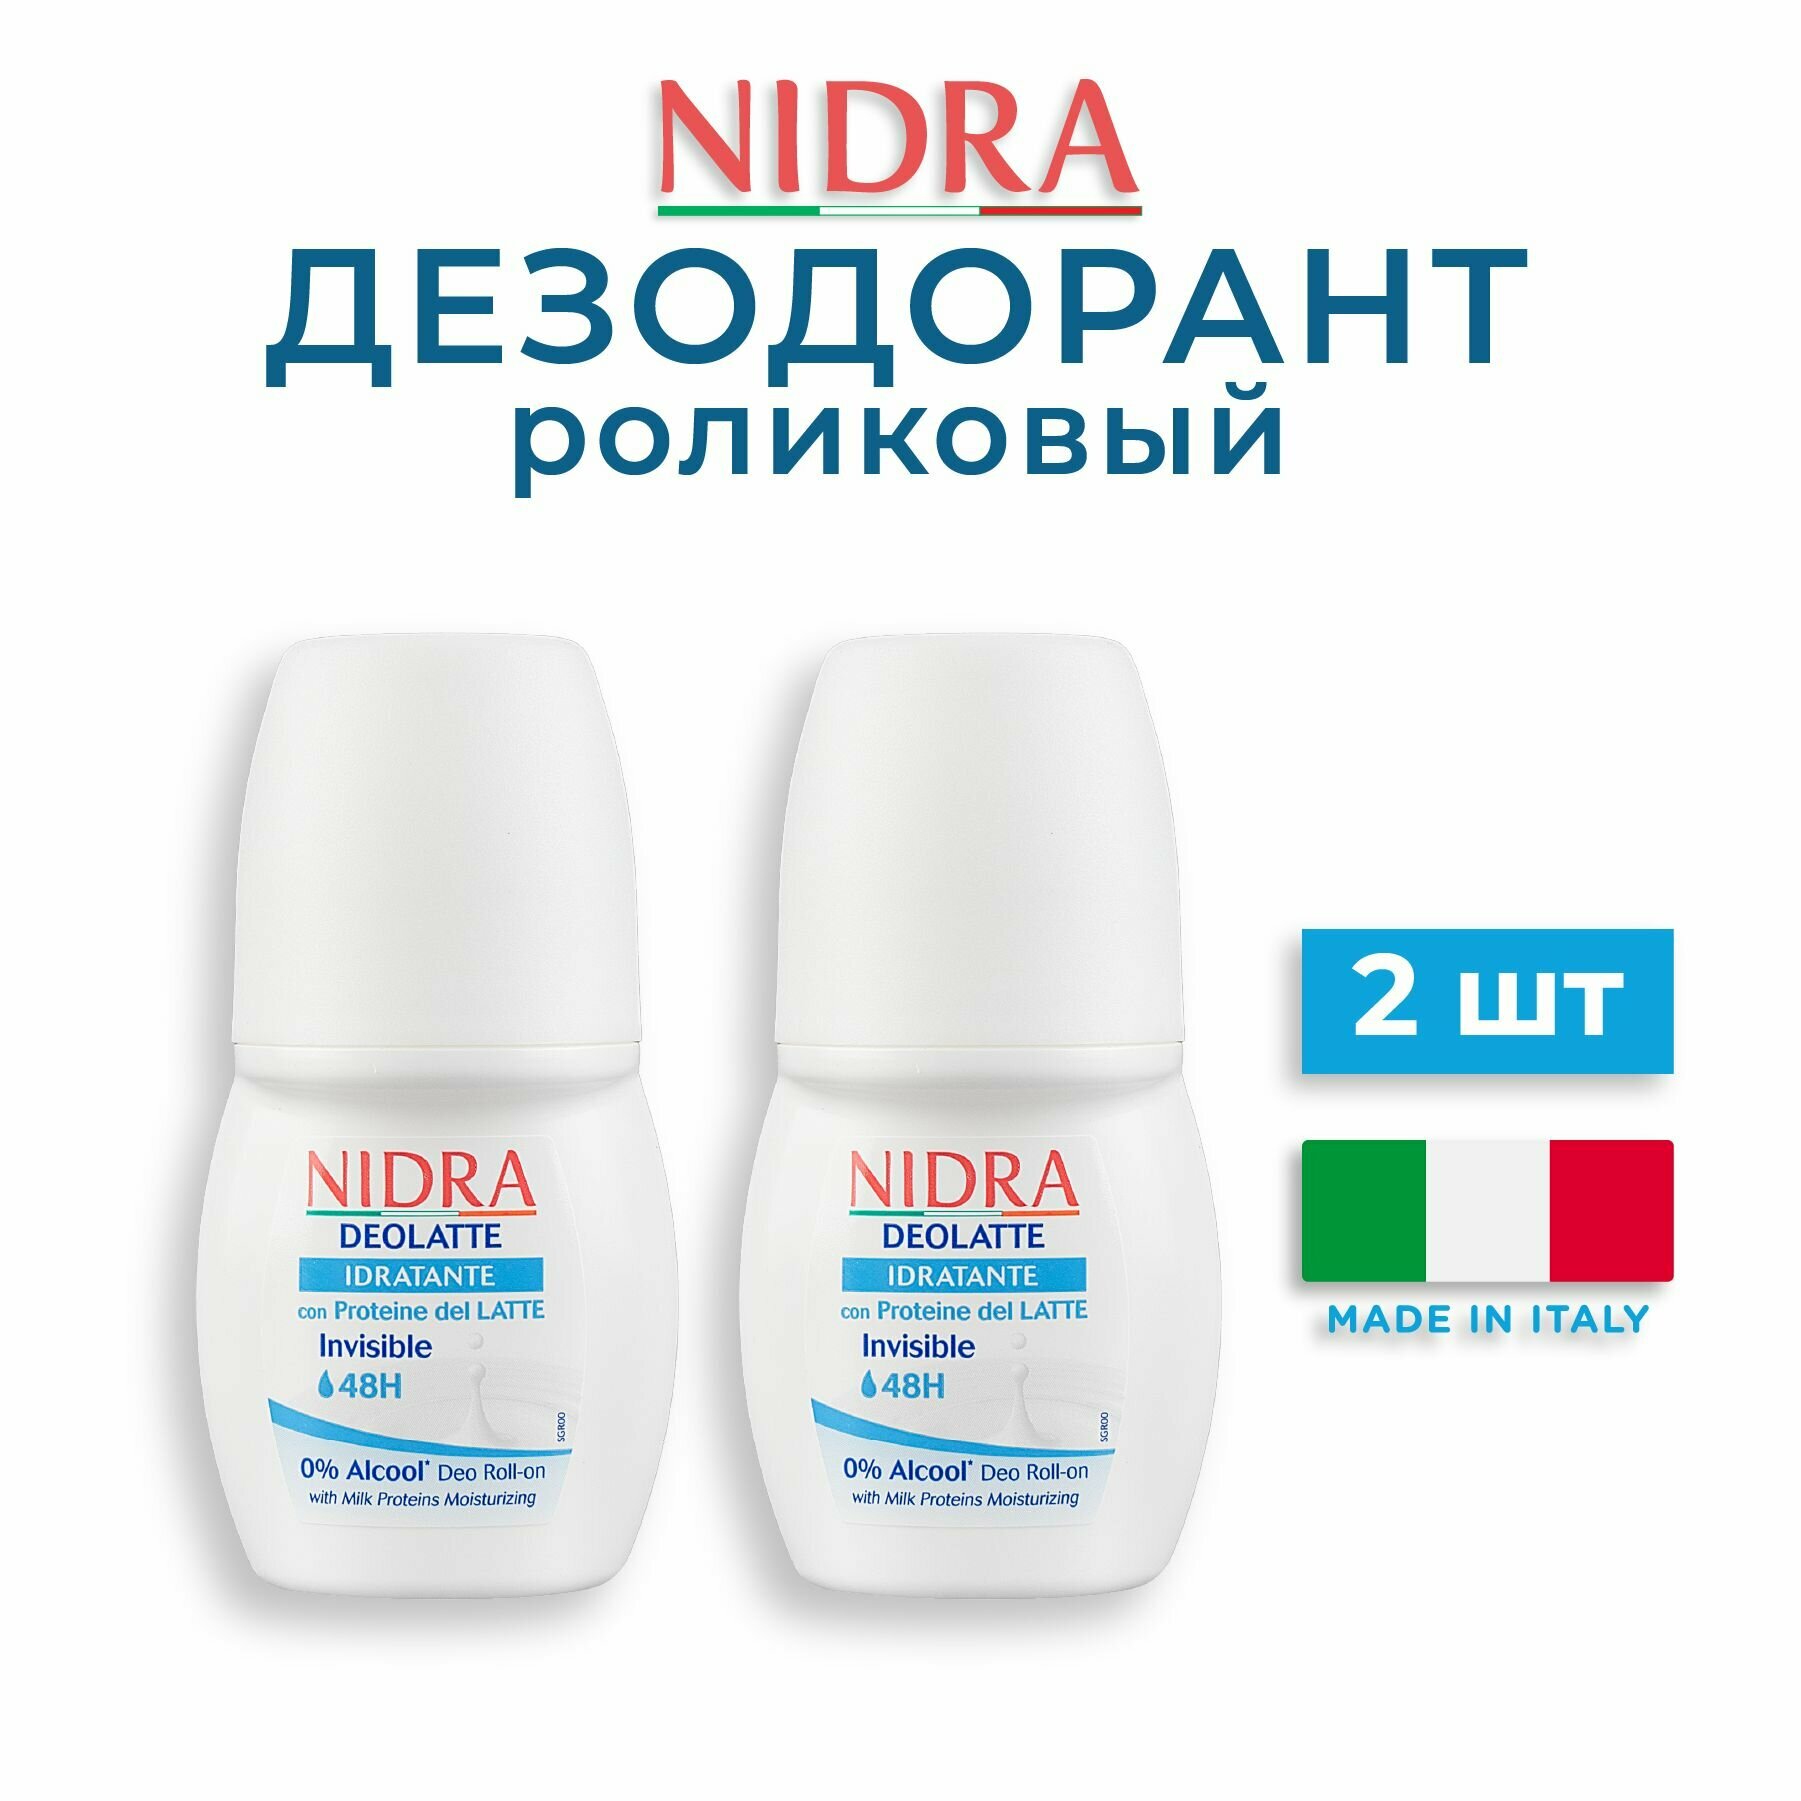 Nidra Женский дезодорант роликовый шариковый увлажняющий с молочными протеинами 50 мл 2 шт